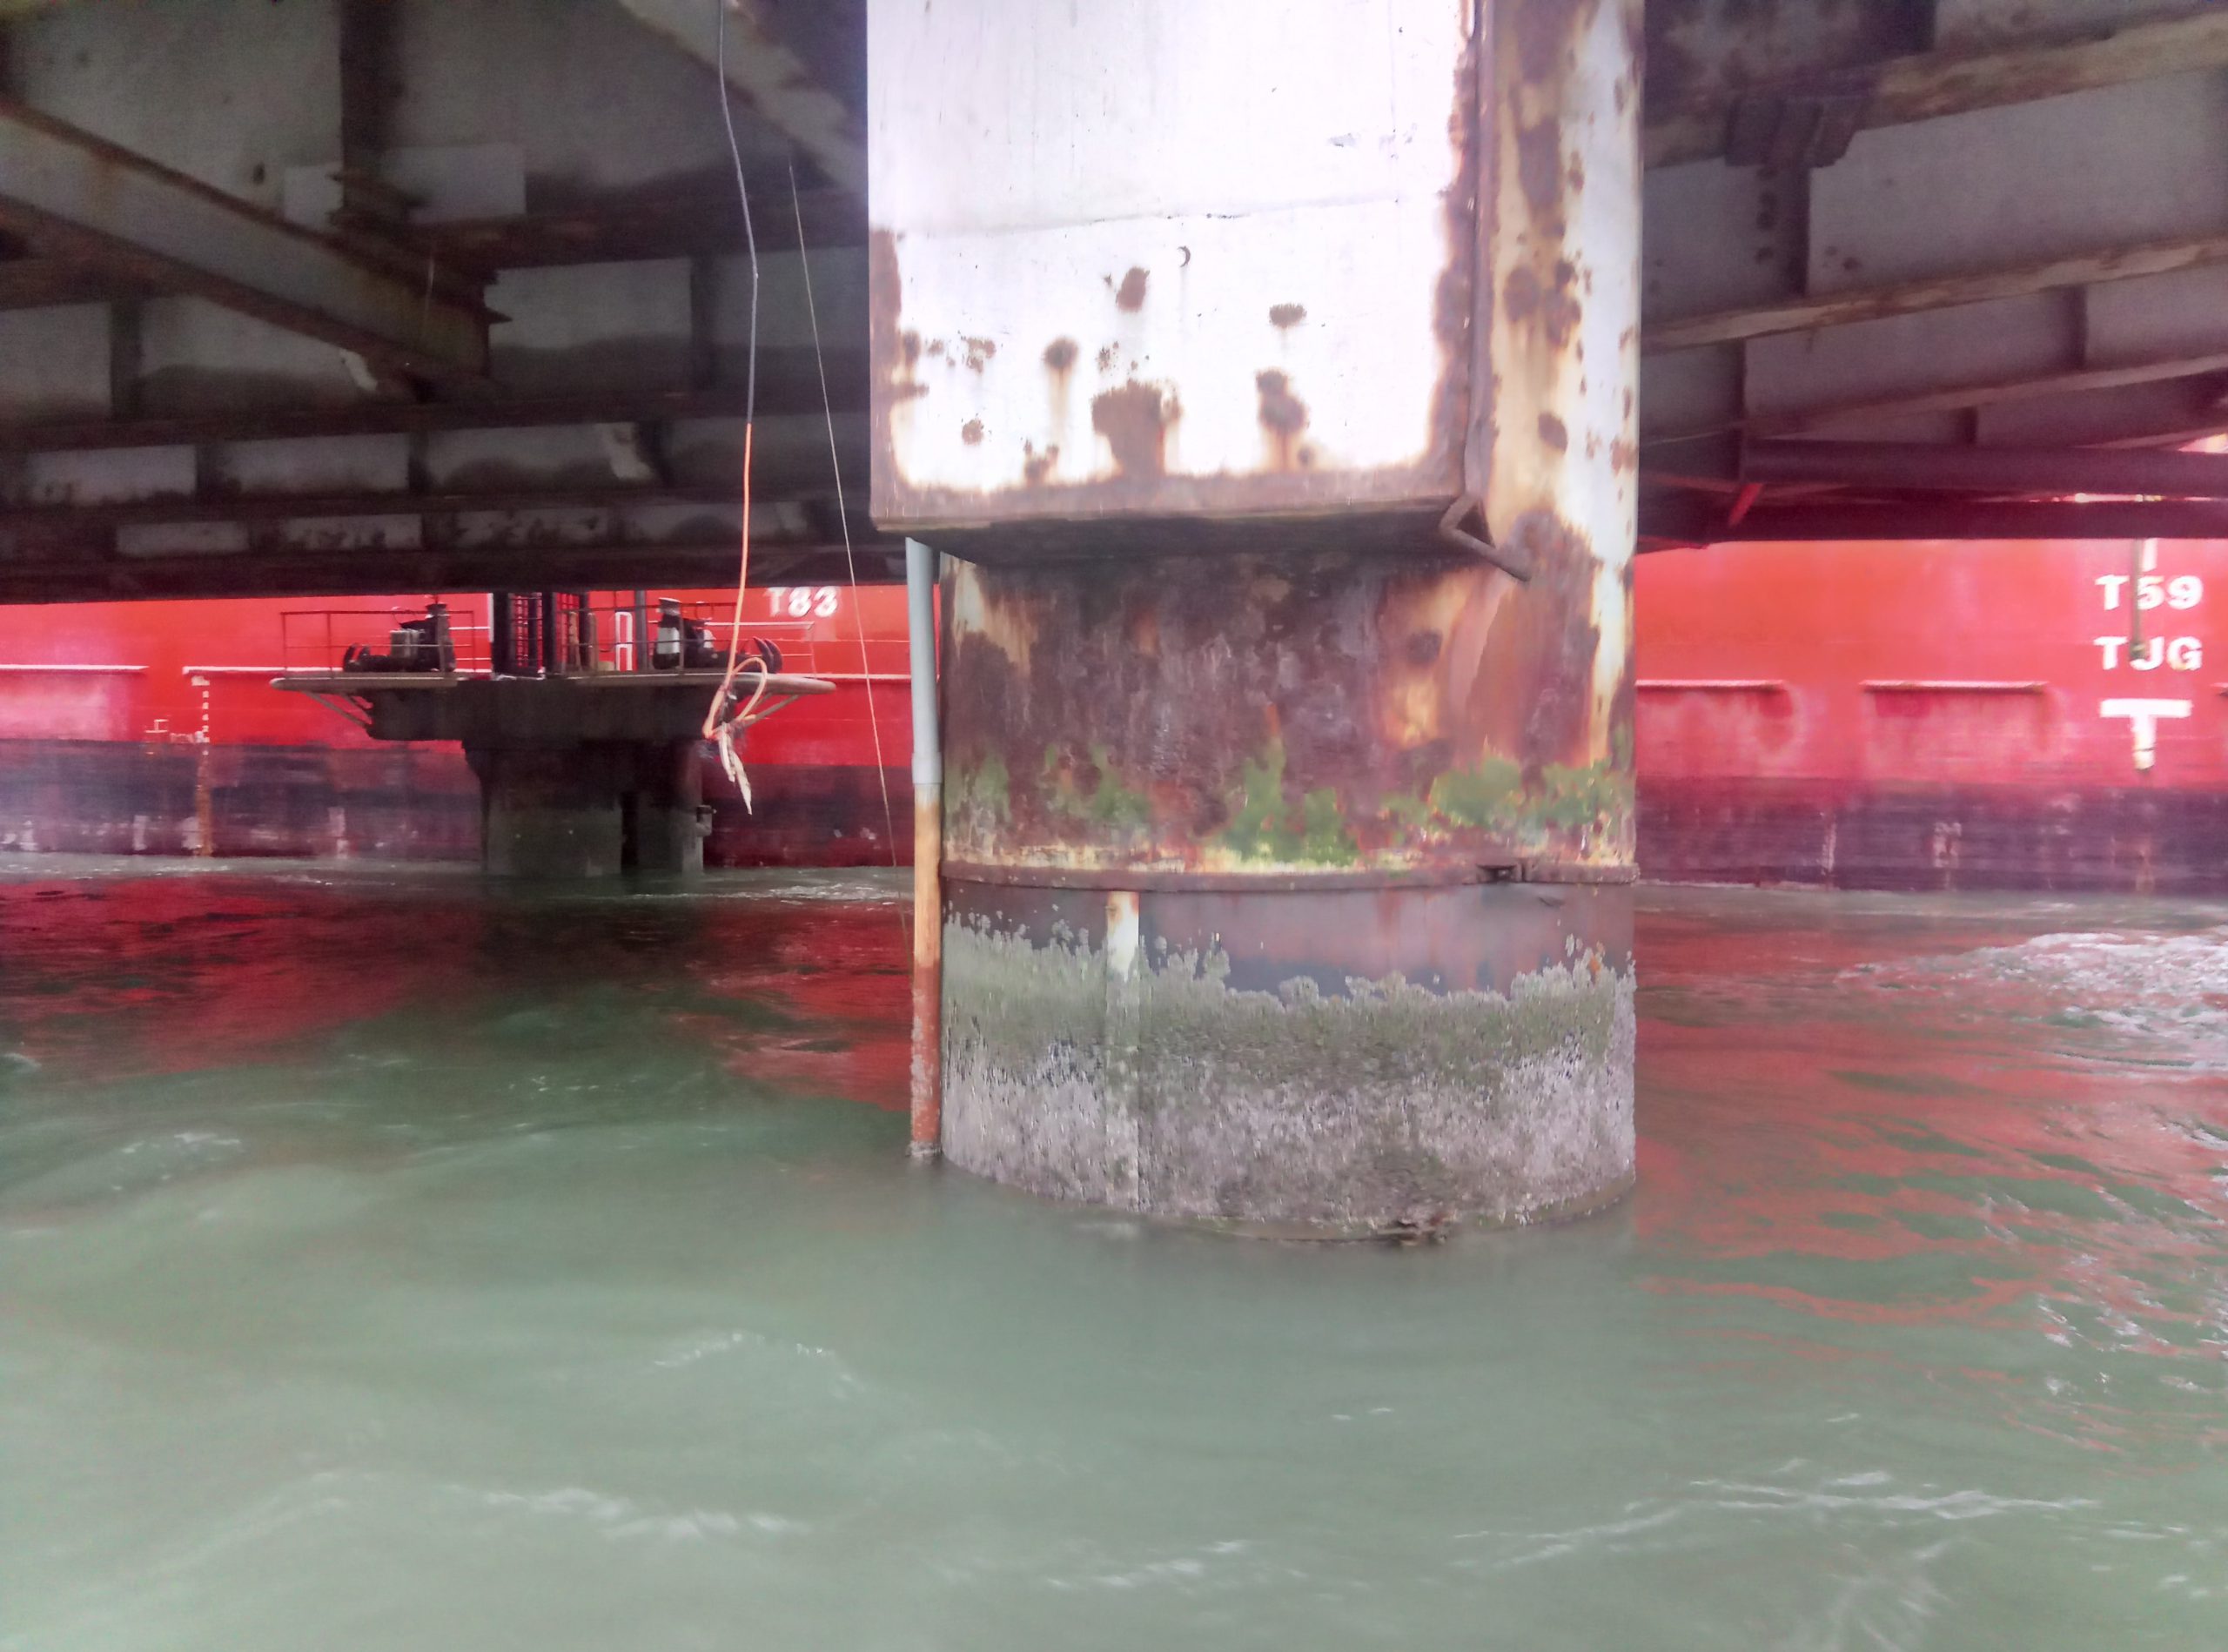 Splash zone corrosion on jetty